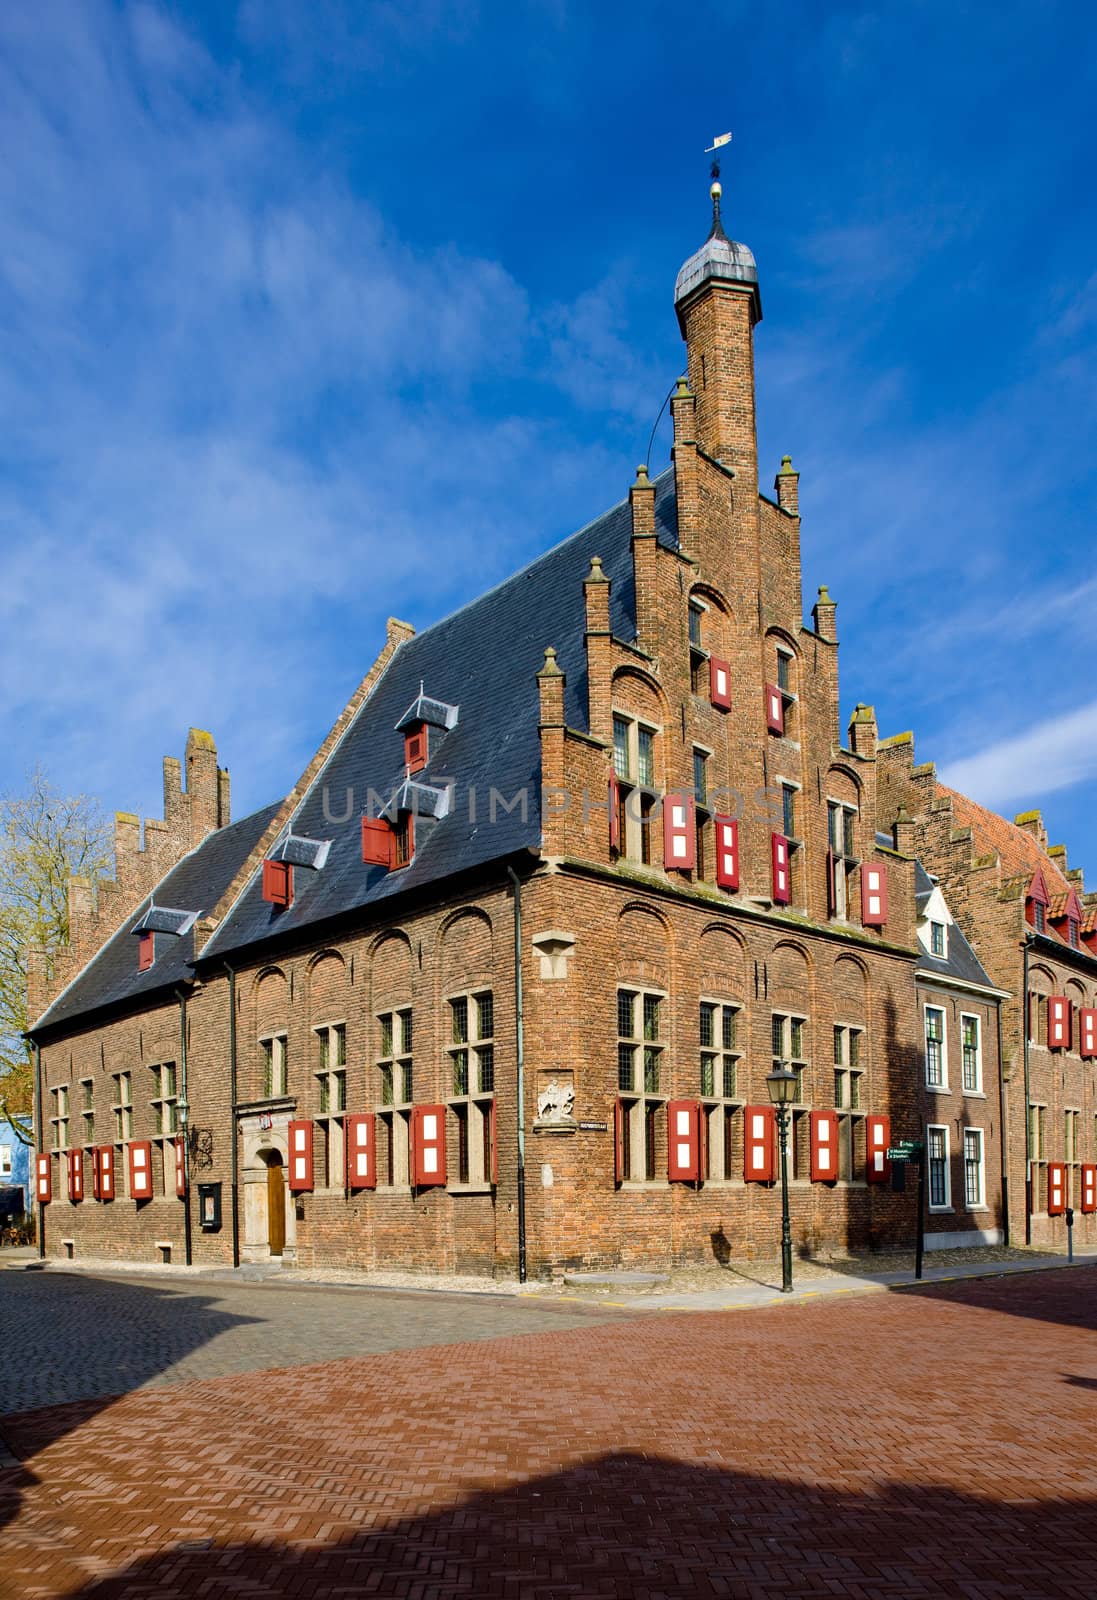 town hall, Doesburg, Gelderland, Netherlands by phbcz